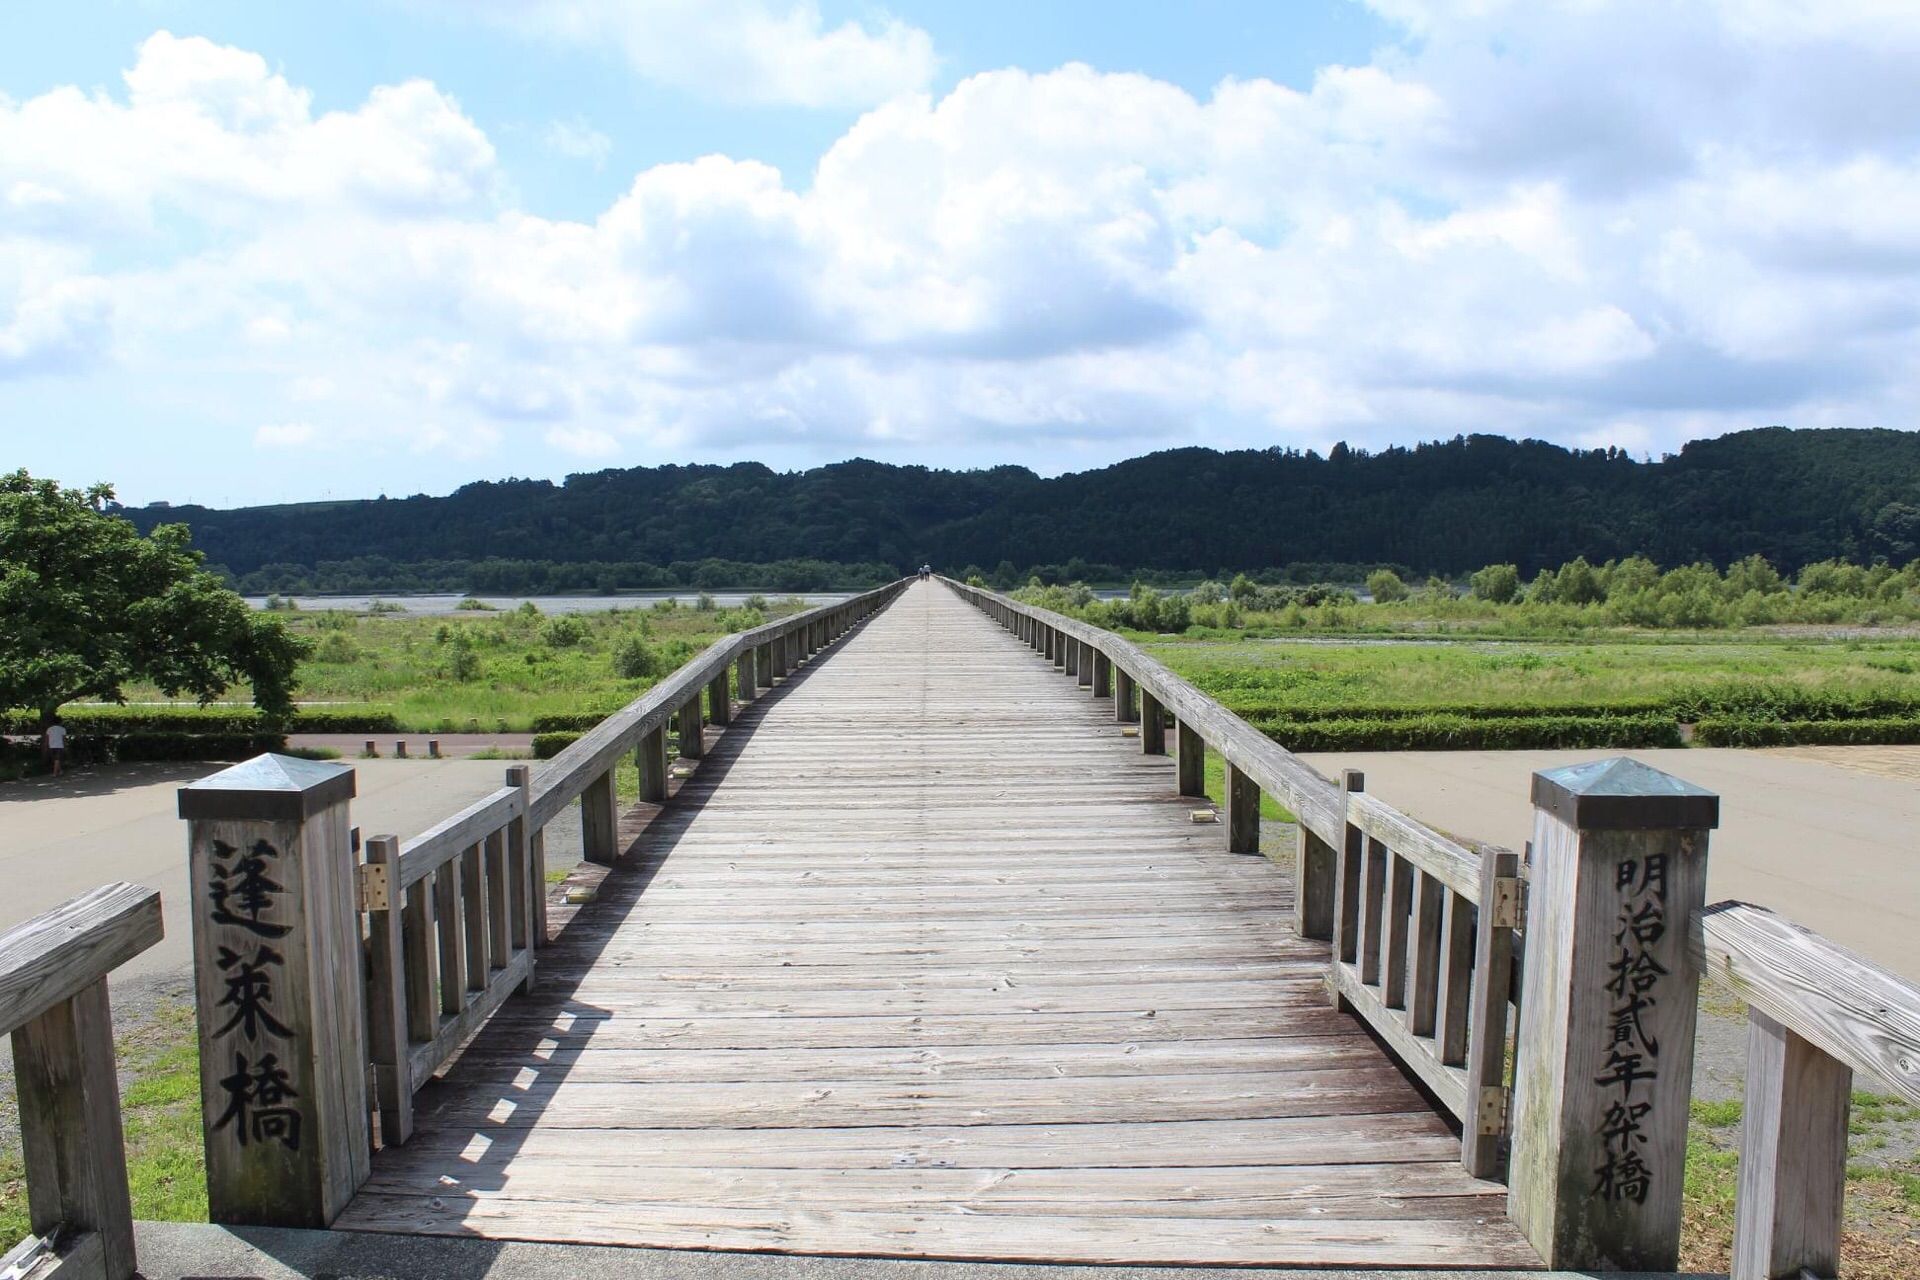 蓬莱橋 静岡県 世界一の木造歩道橋